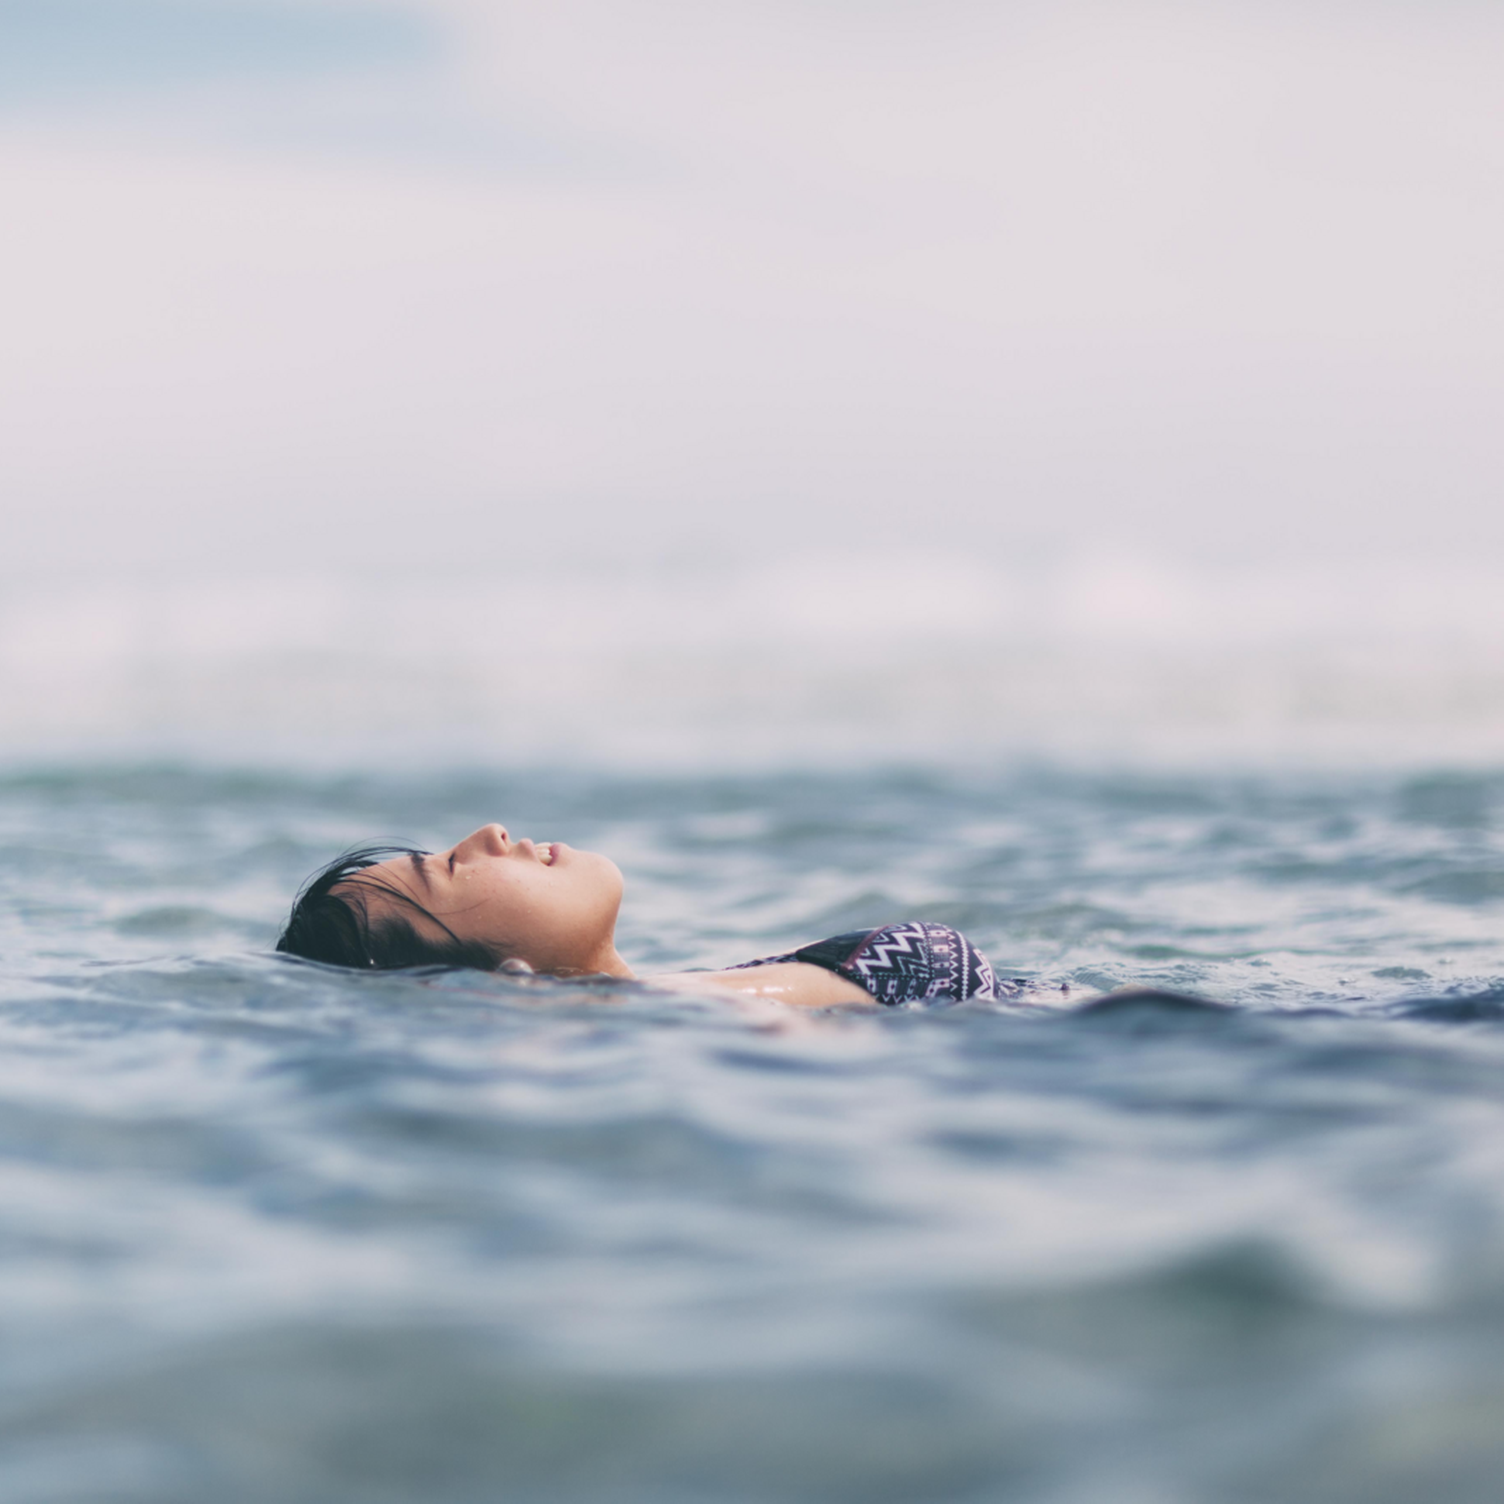 Una donna che nuota a pelo d'acqua